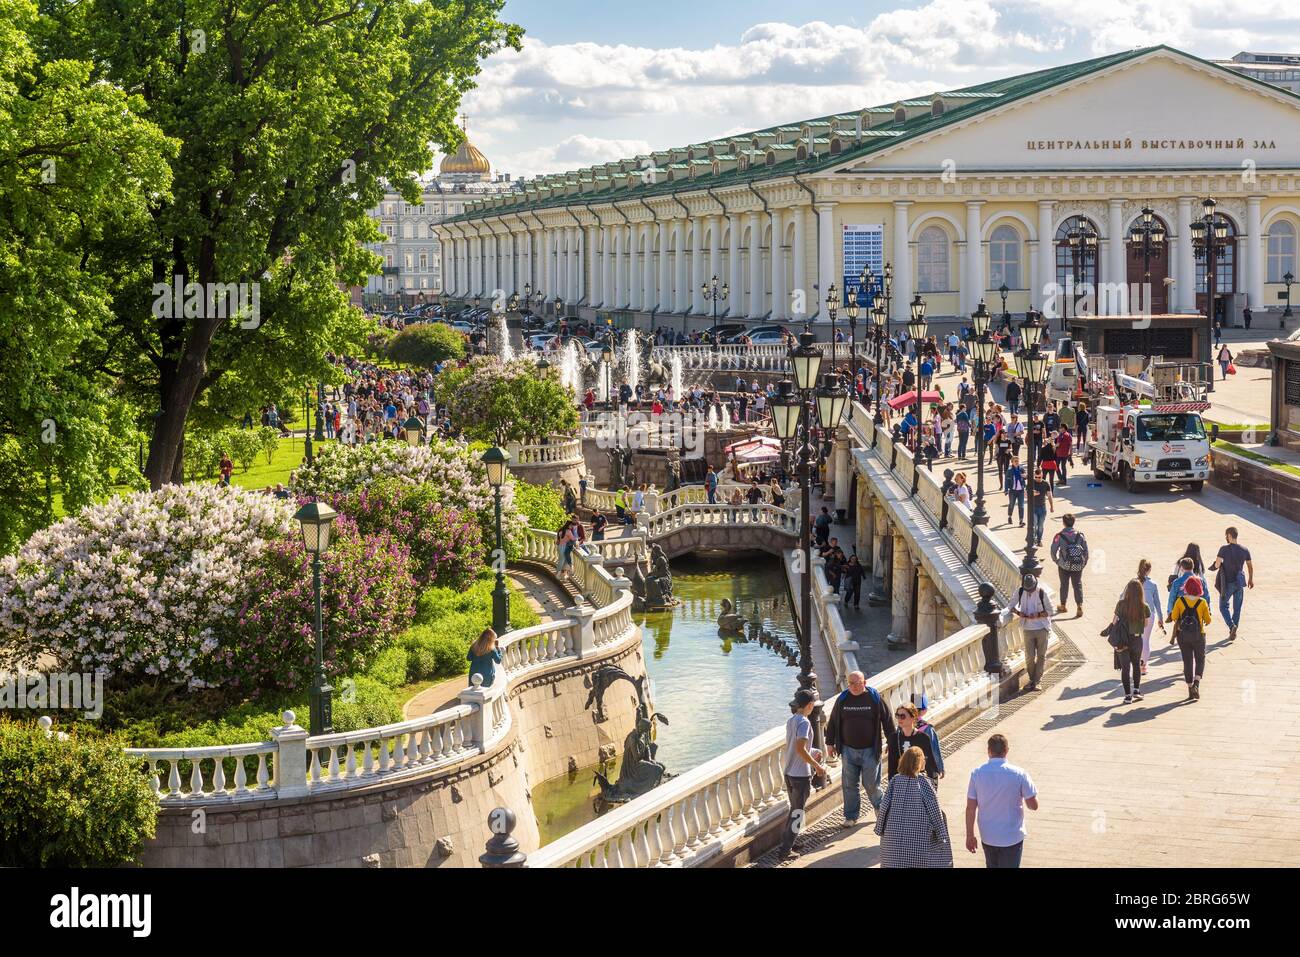 Moskau – 19. Mai 2019: Manezhnaja oder Manege Platz mit schönen Brunnen in Moskau, Russland. Dieses Hotel ist eine Touristenattraktion von Moskau. Leute wa Stockfoto